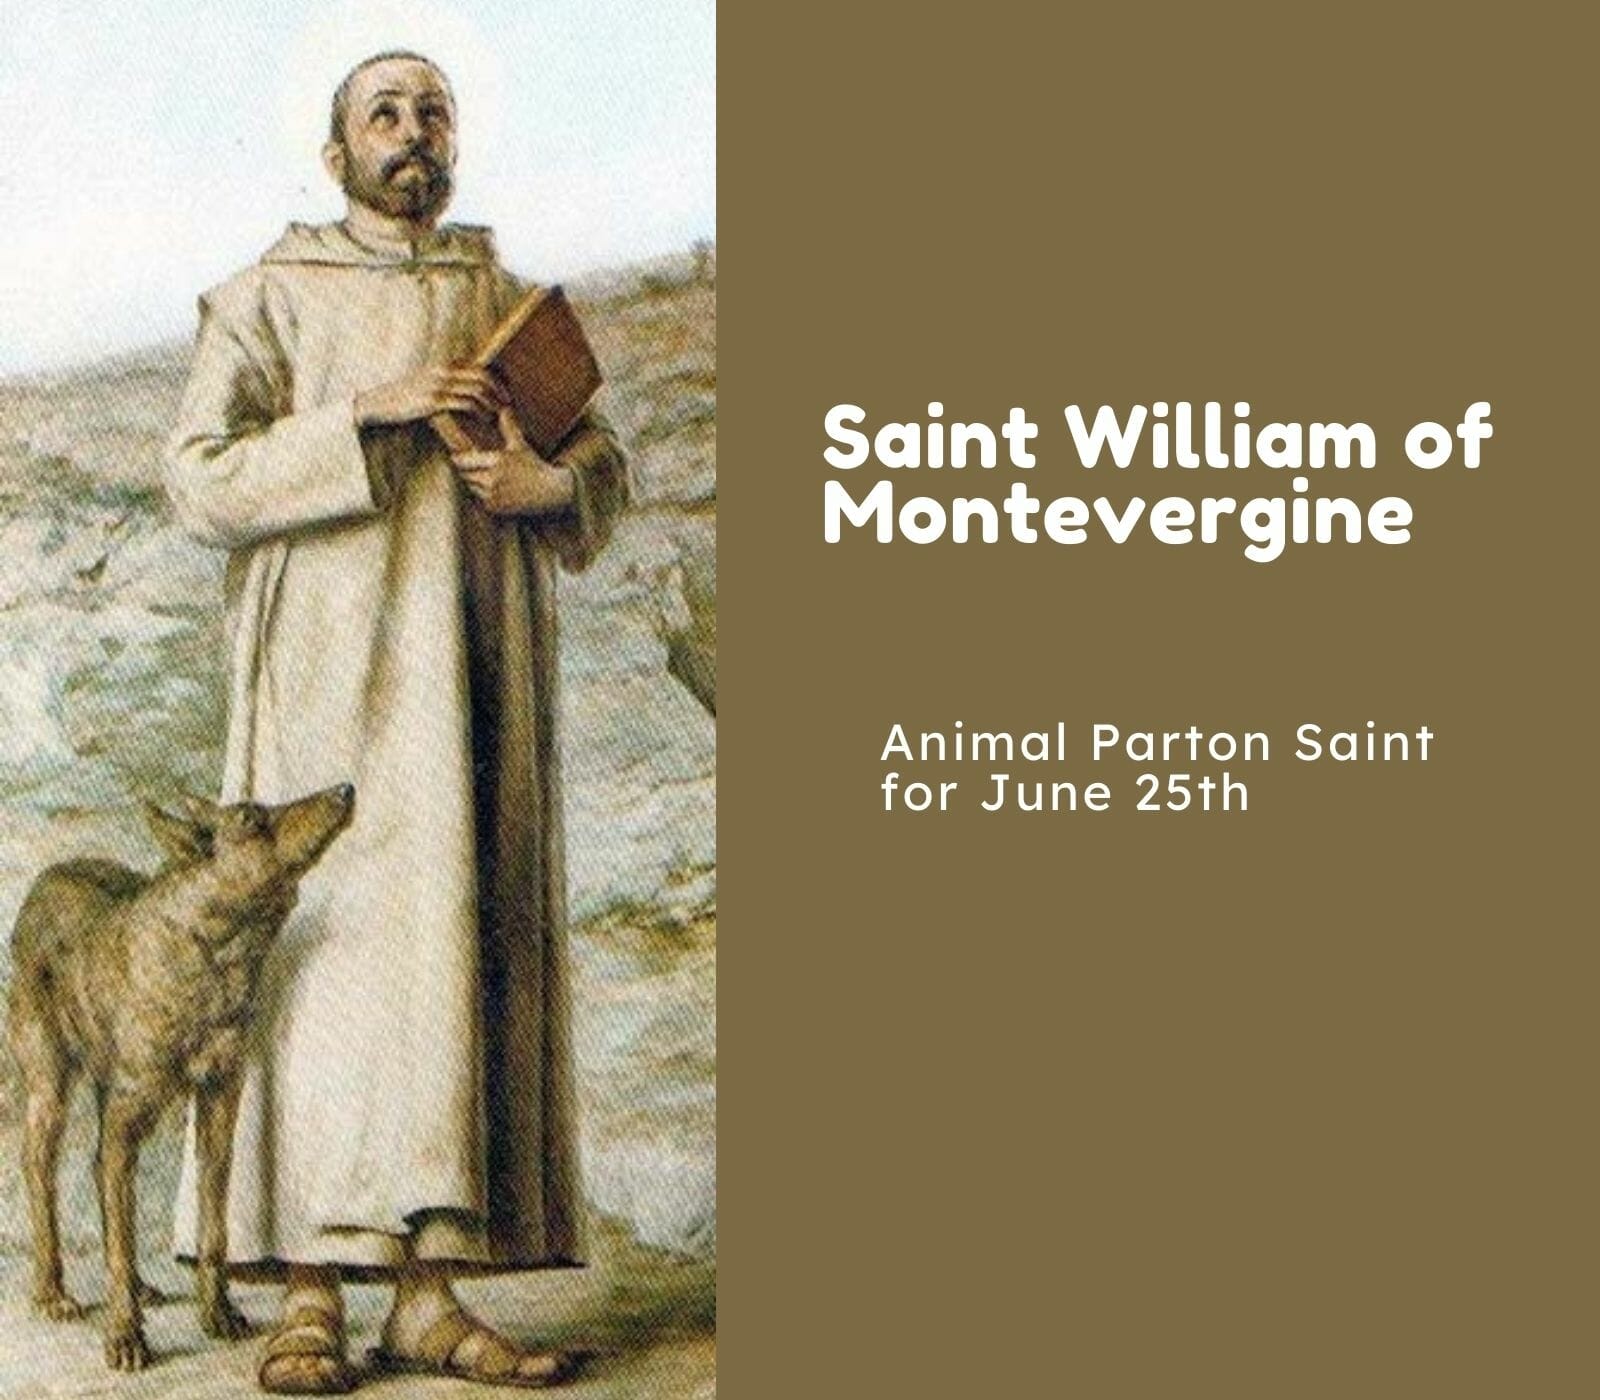 Saint William of Montevergine